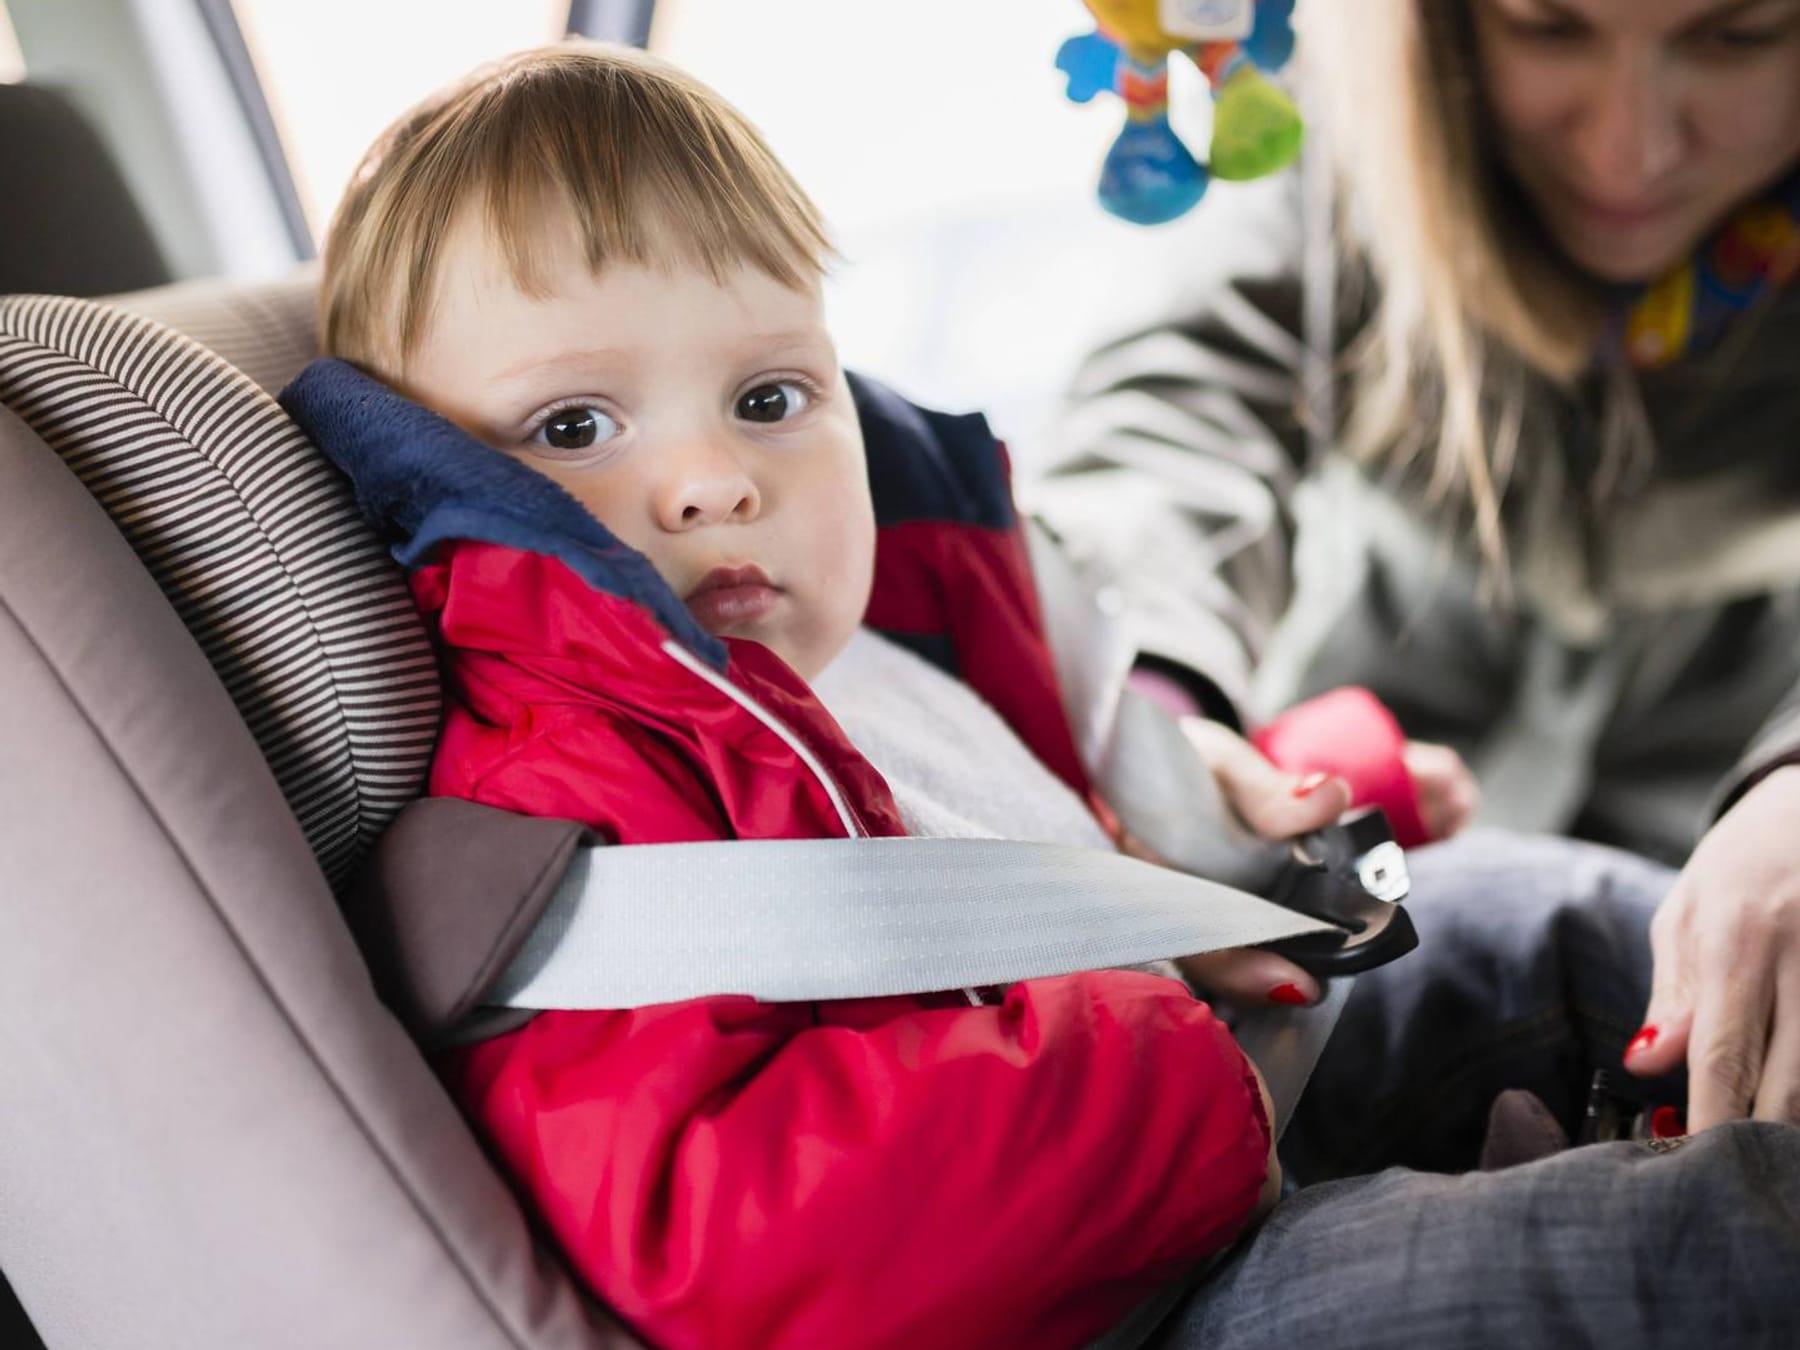 Kindersitze: Diese Fehler sollten Eltern vermeiden